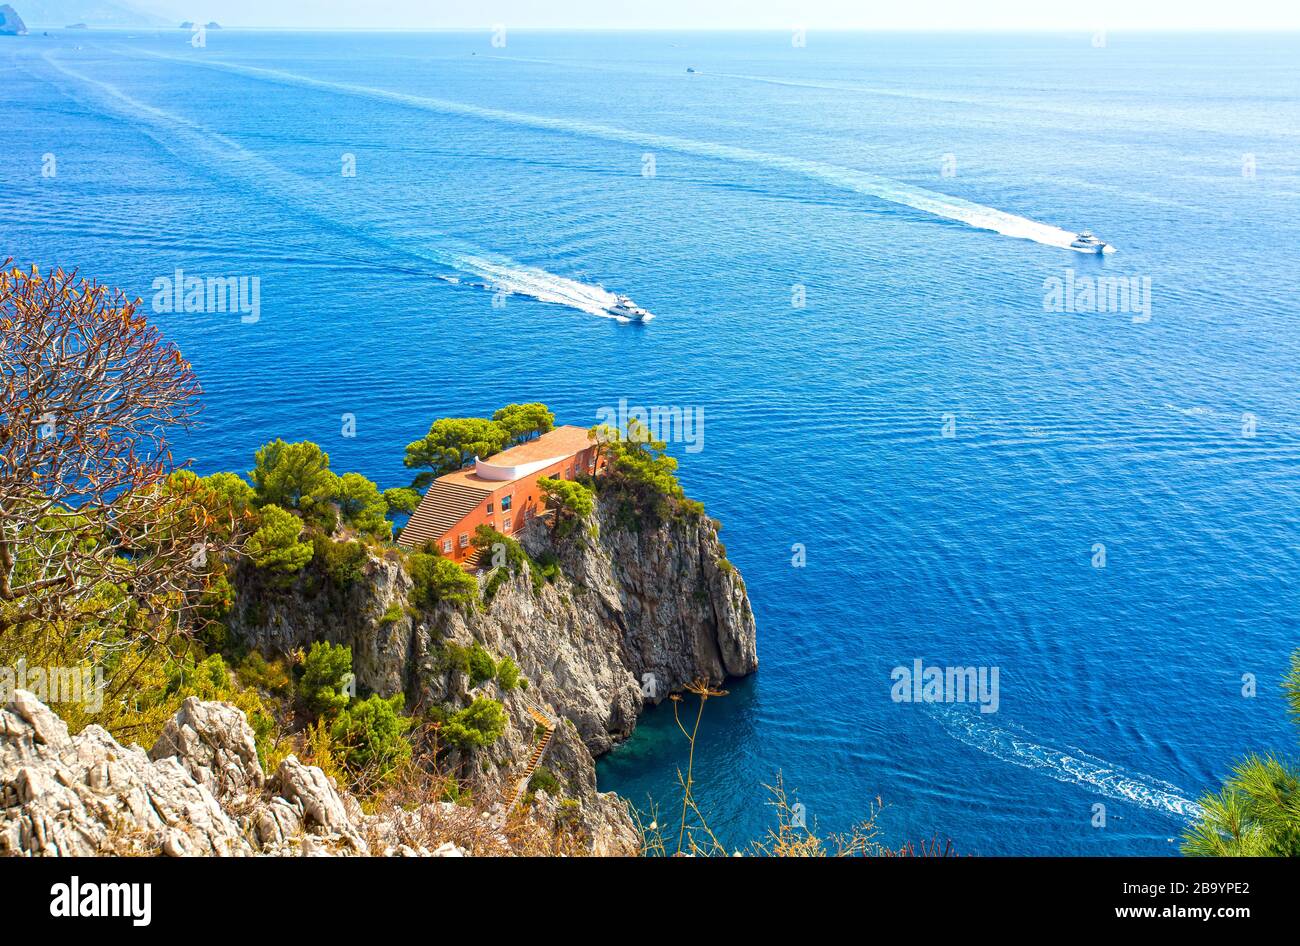 Villa Malaparte villas, Punta Massullo cape, Capri island, Campania,Italy, Europe Stock Photo